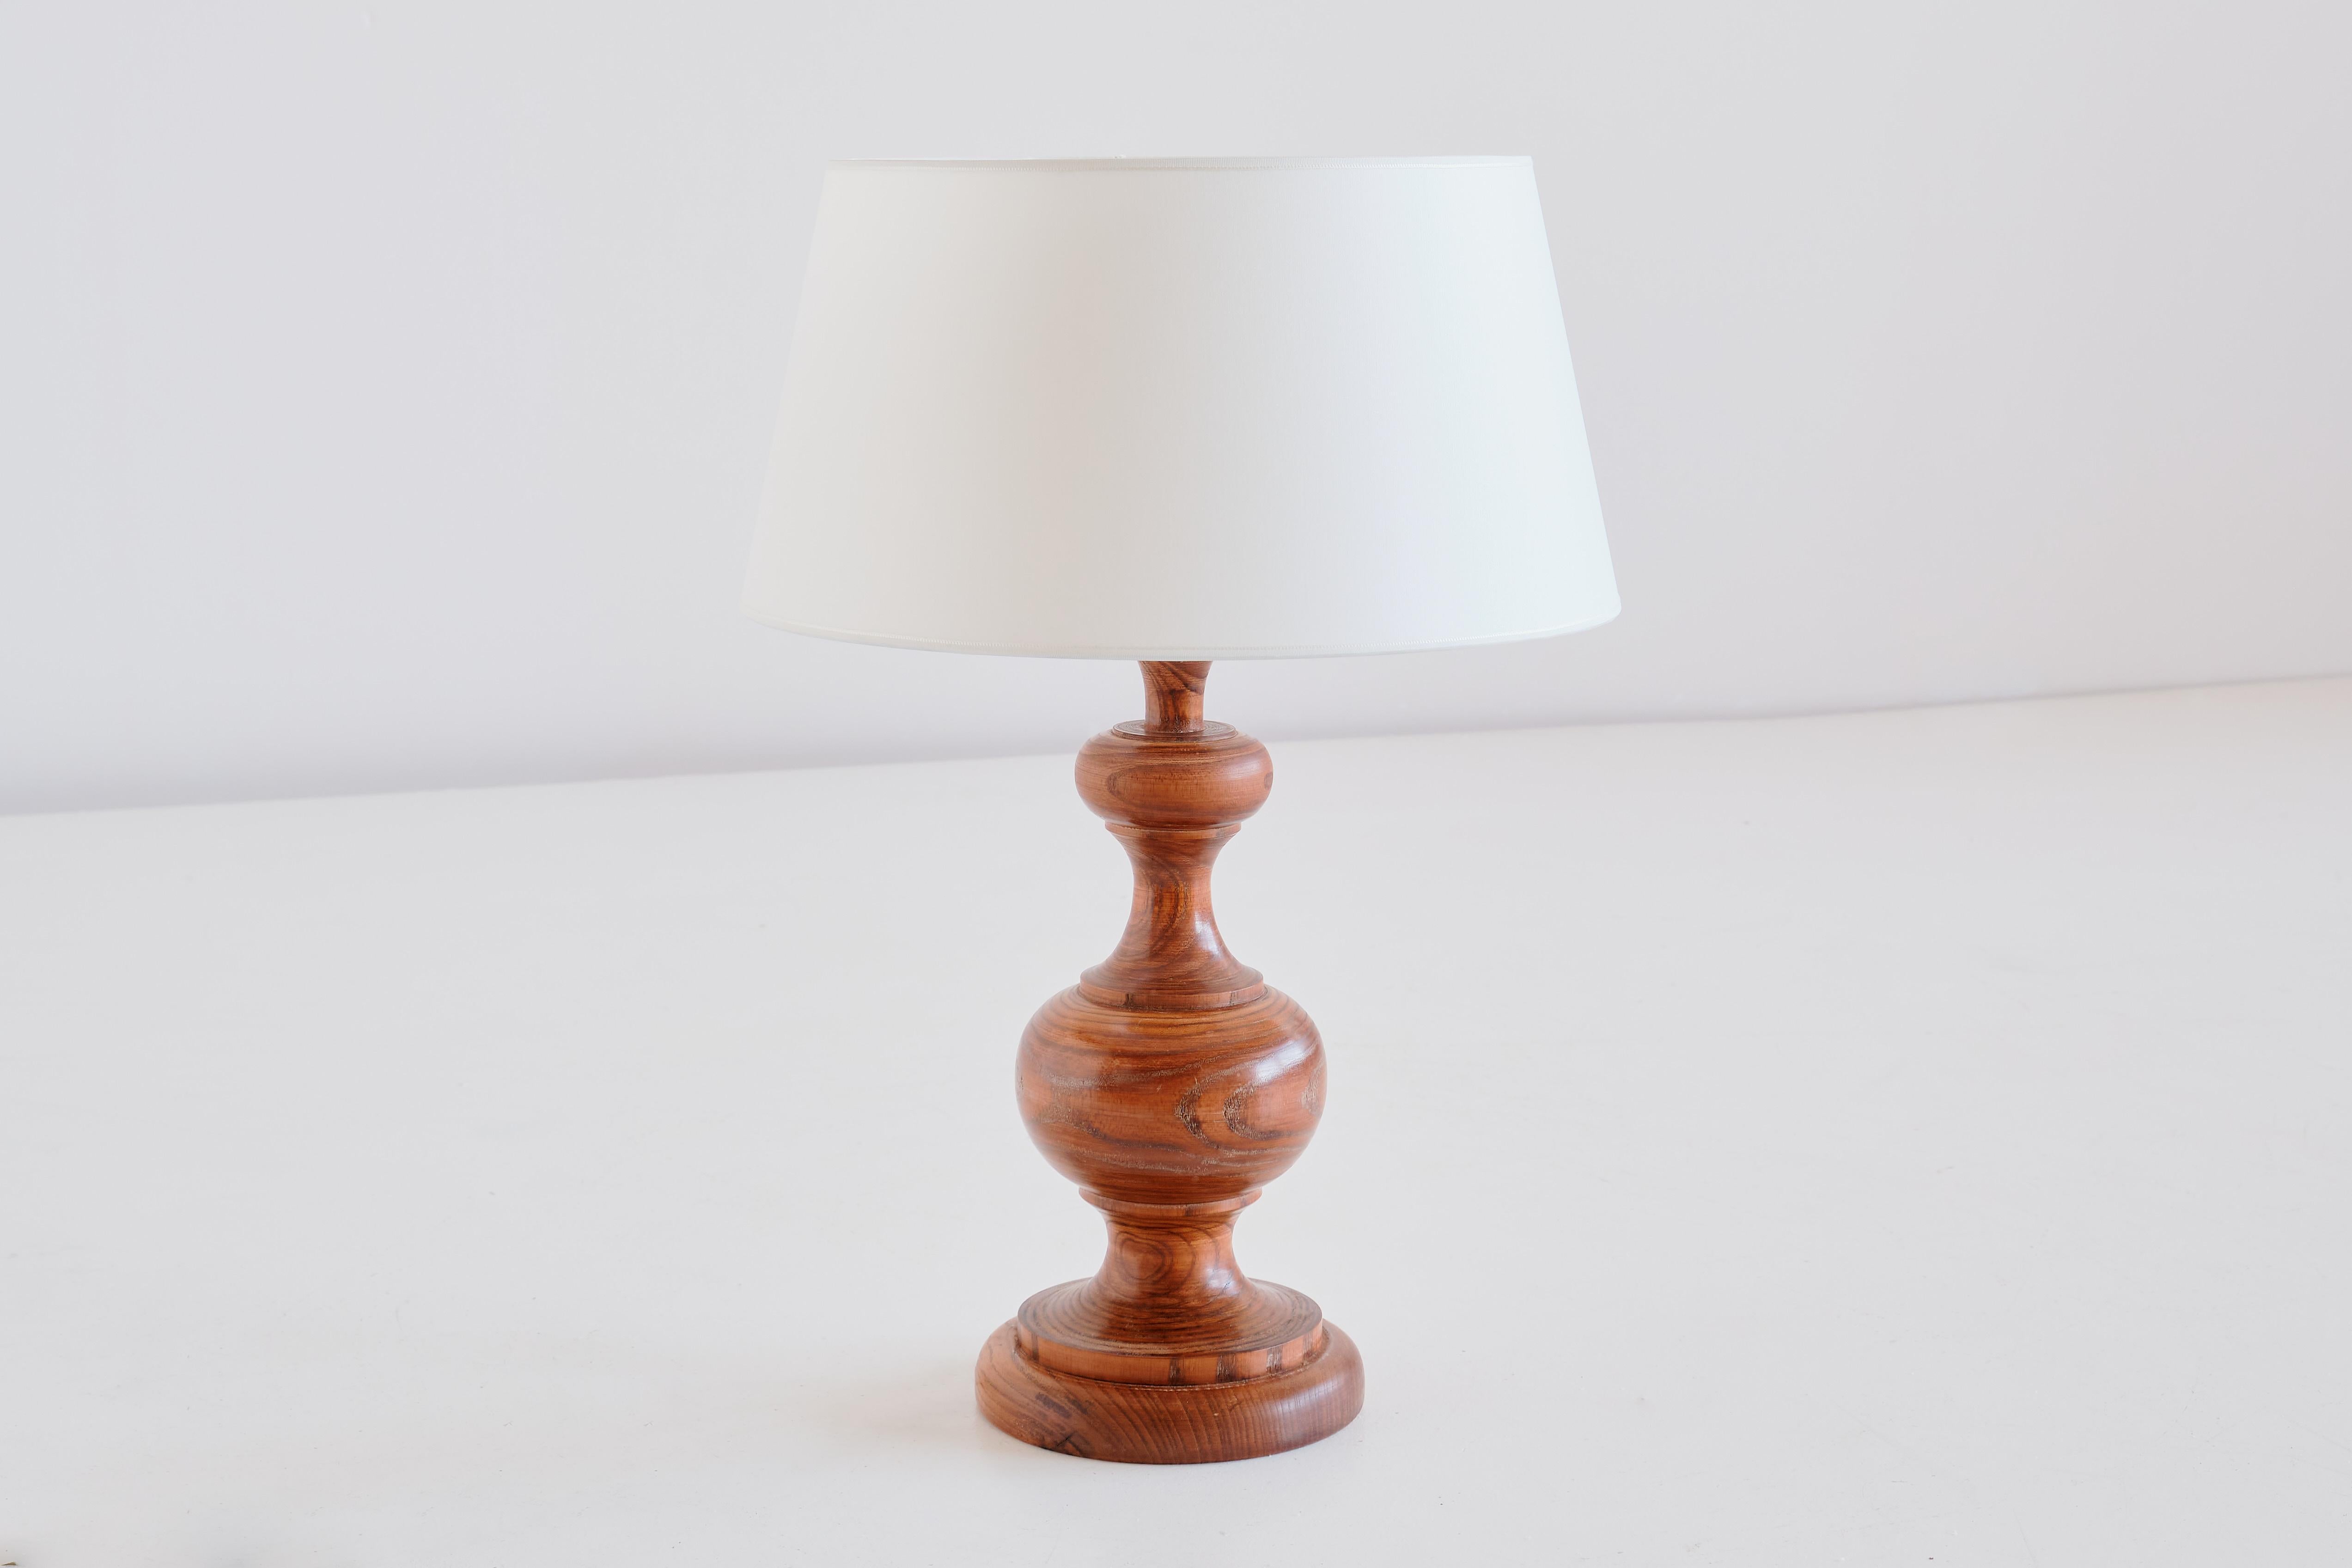 Cette lampe de table rustique et élégante a été produite en France dans les années 1950. La lampe est fabriquée en bois de chêne massif et présente un grain de bois remarquable. Le nouvel abat-jour ivoire en forme de tambour effilé diffuse une